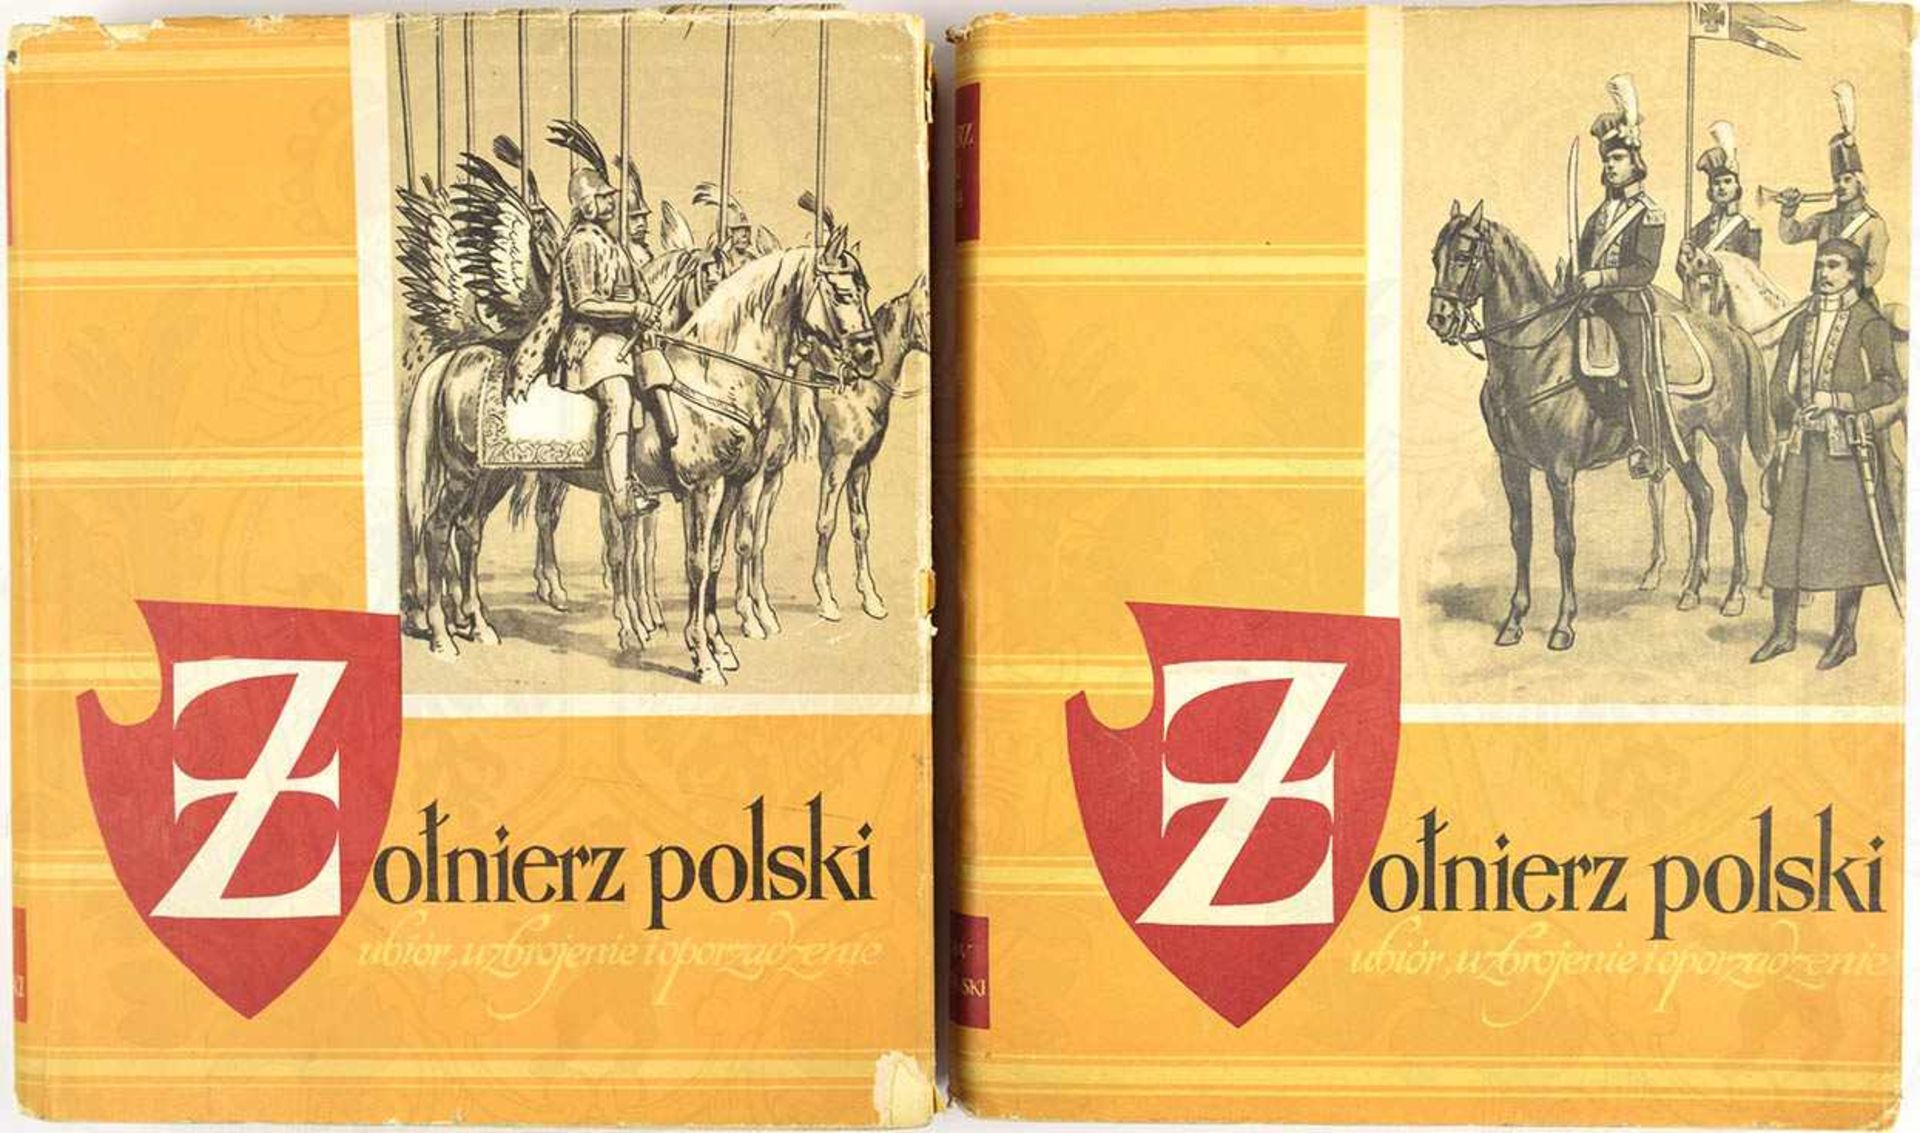 ZOLNIERZ POLSKI (DER POLNISCHE SOLDAT), 1. u. 2. Band, poln. Text, Warschau 1960/1962, ges. 1046 S.,